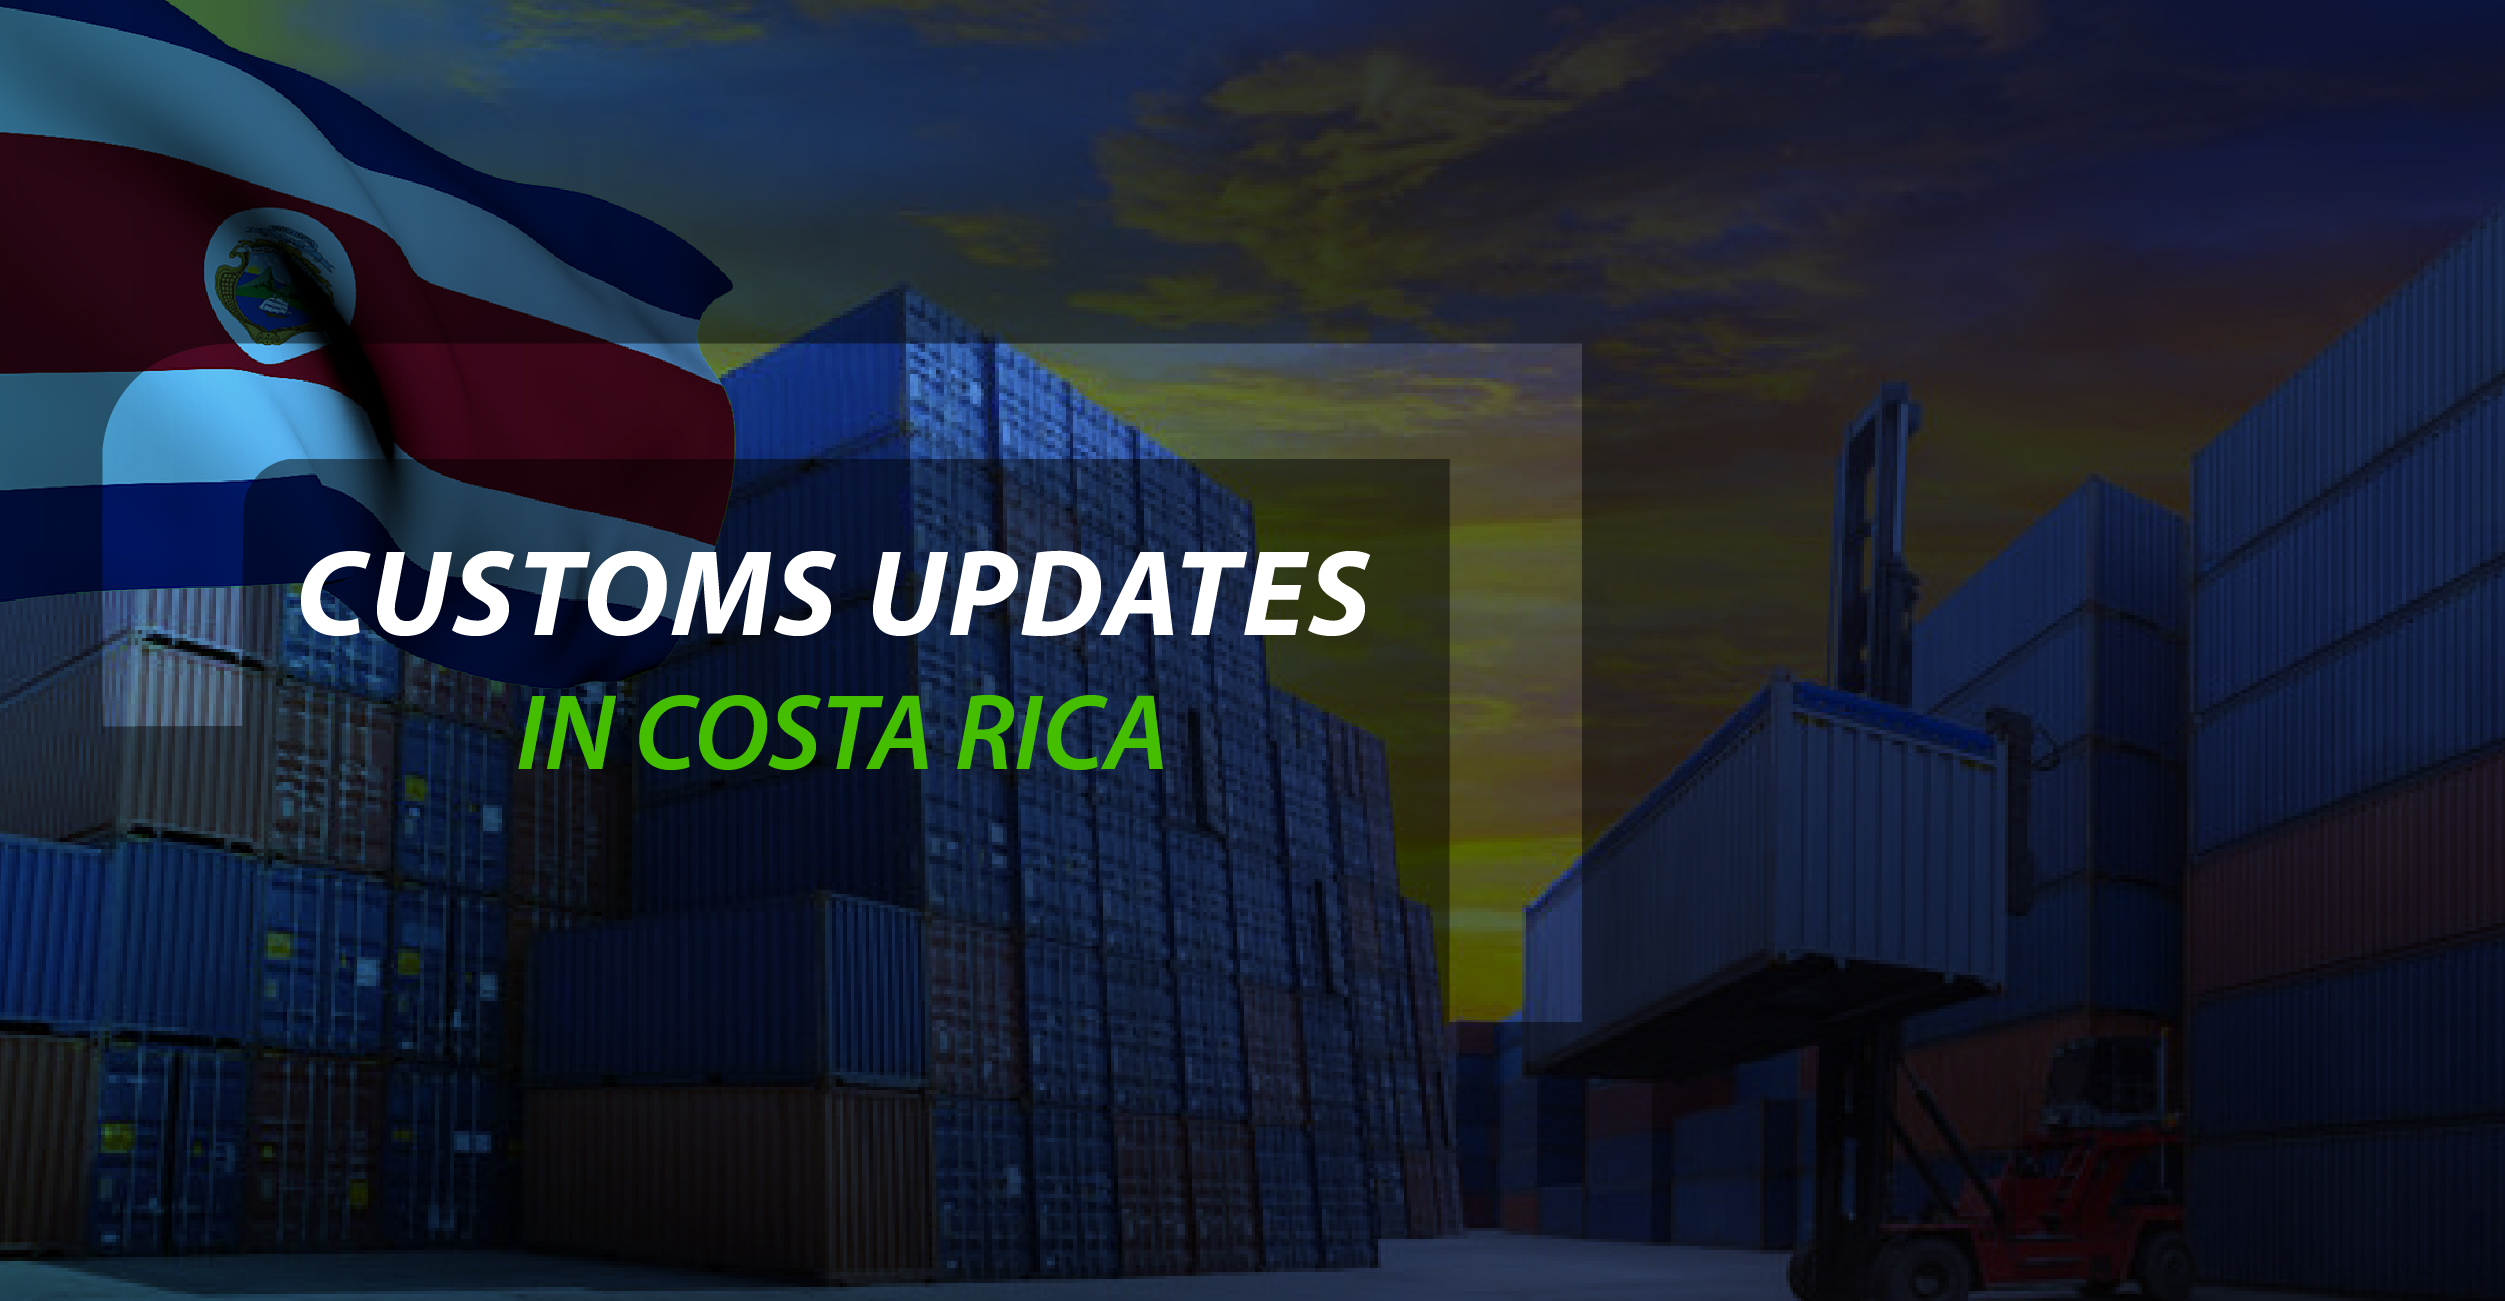 Customs updates in Costa Rica